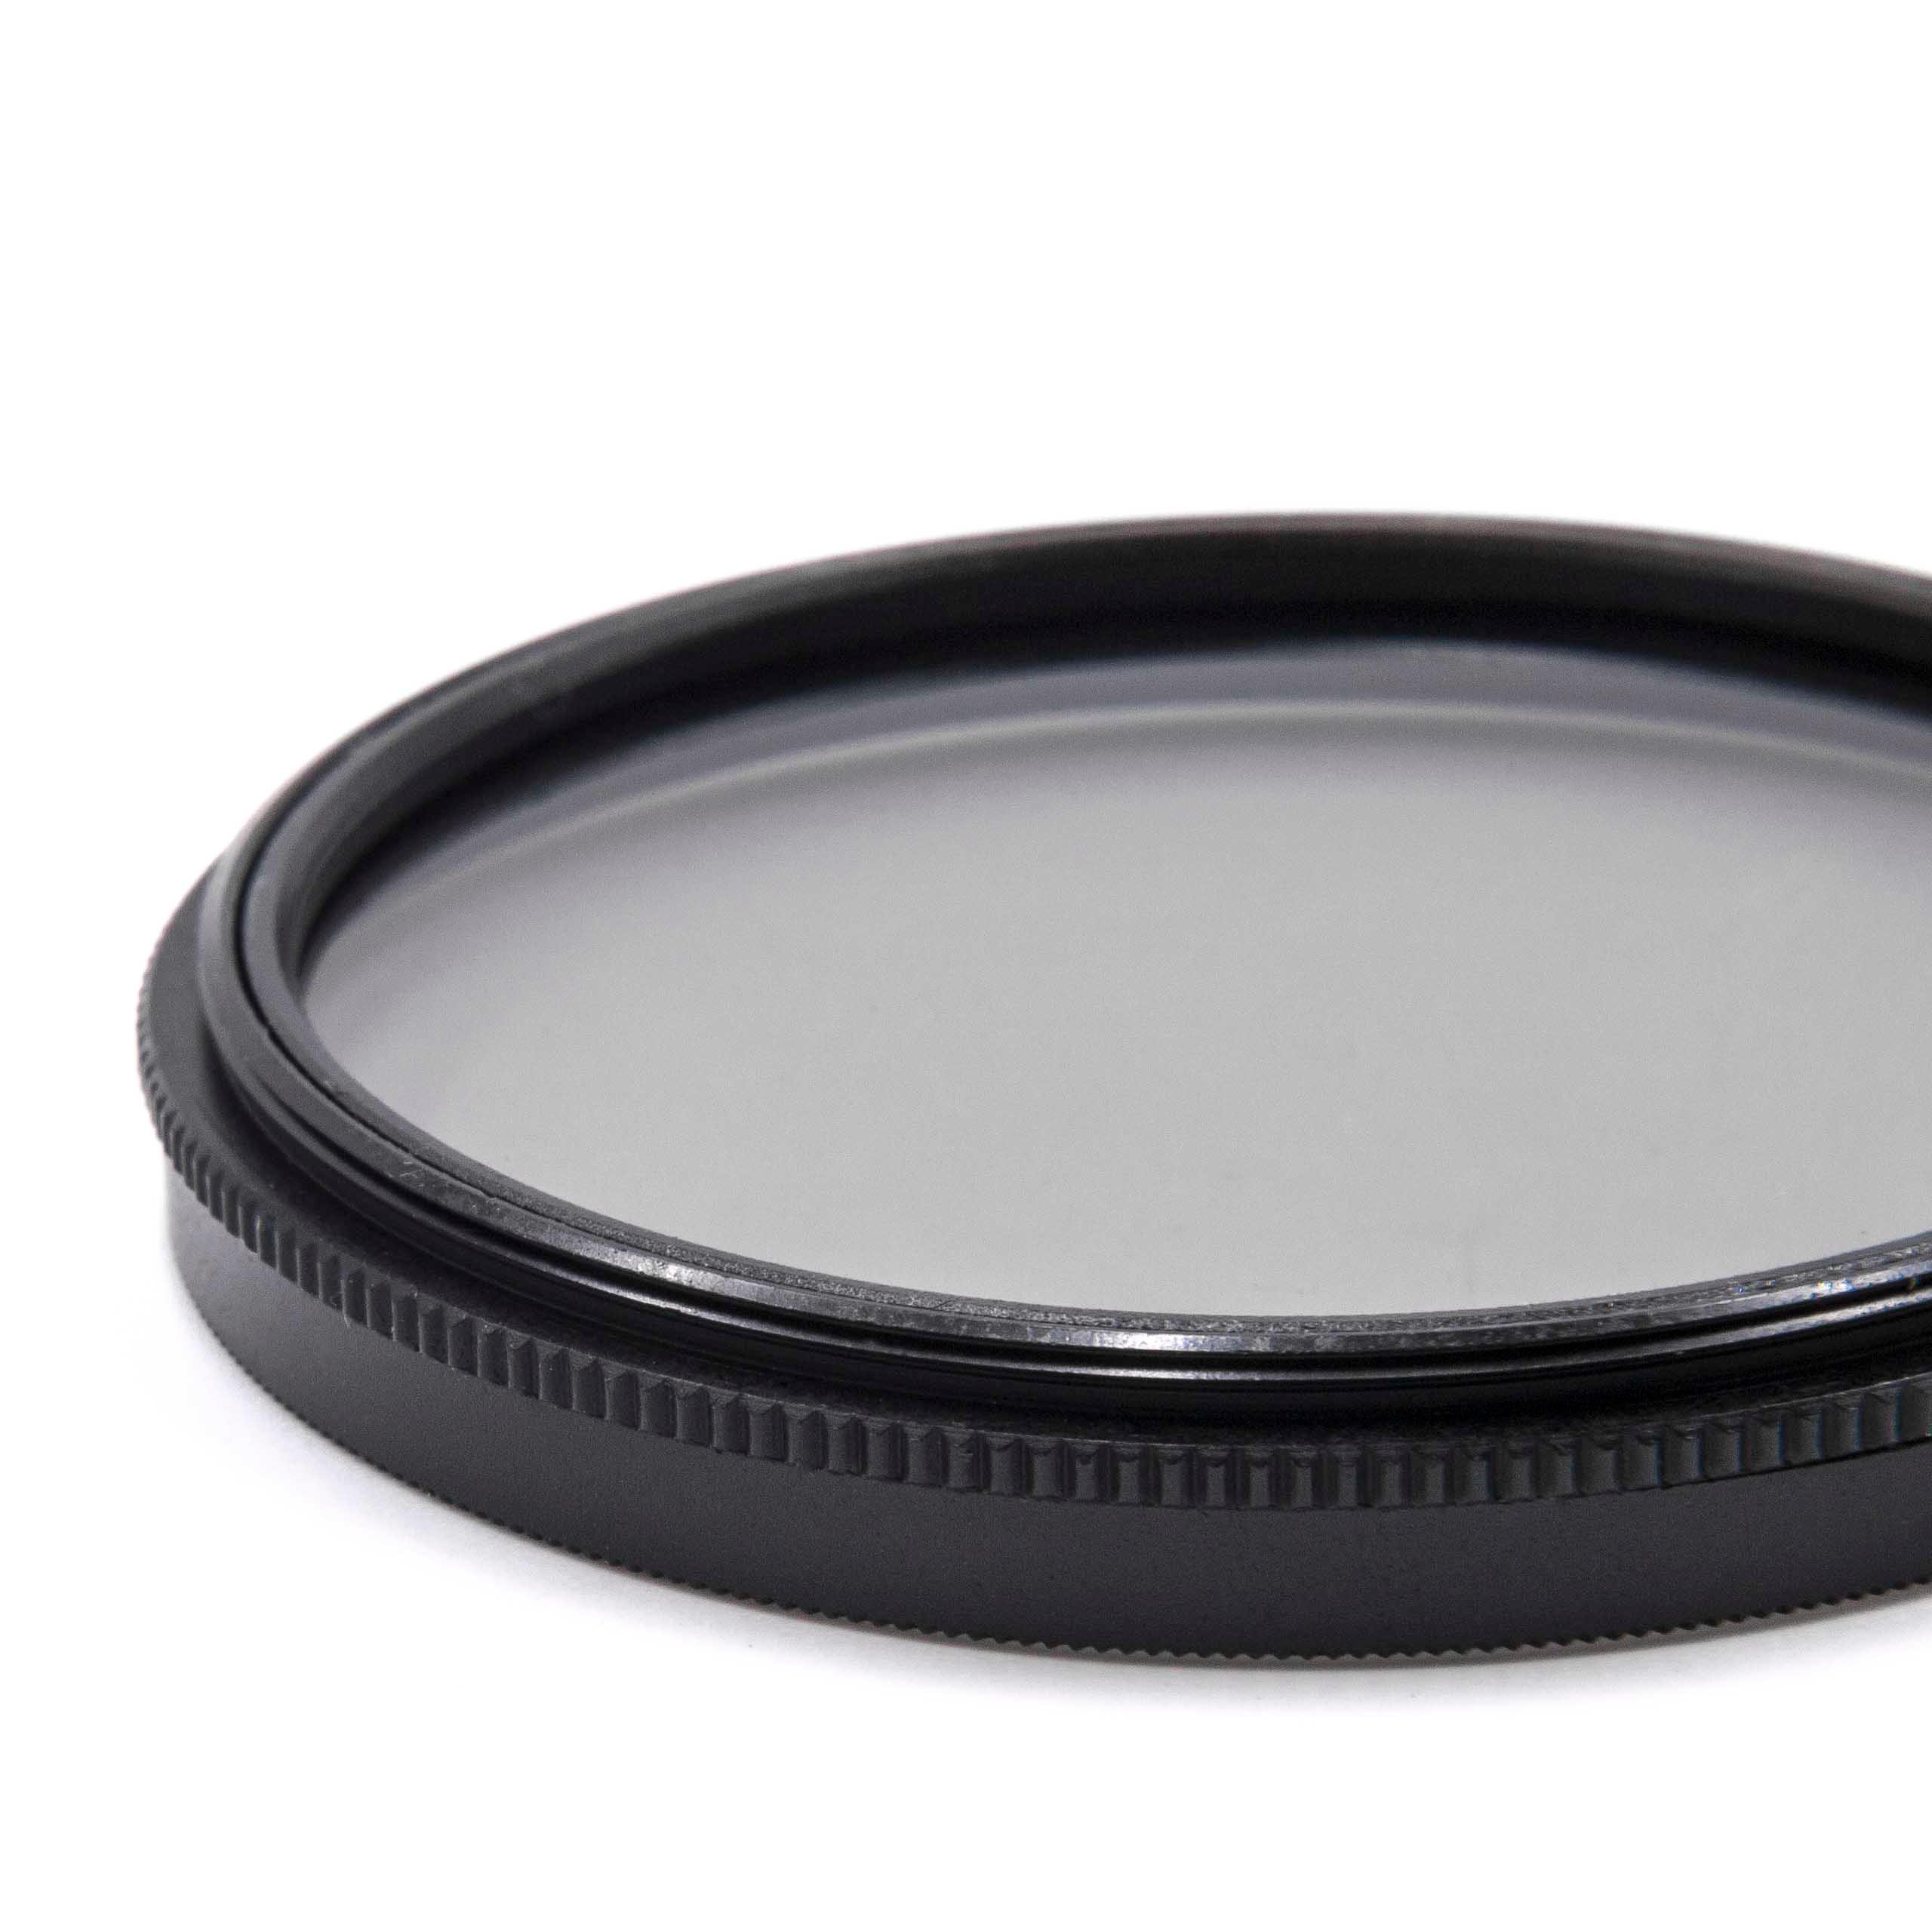 Filtro polarizador para objetivos y cámaras con rosca de filtro de 55 mm - Filtro CPL